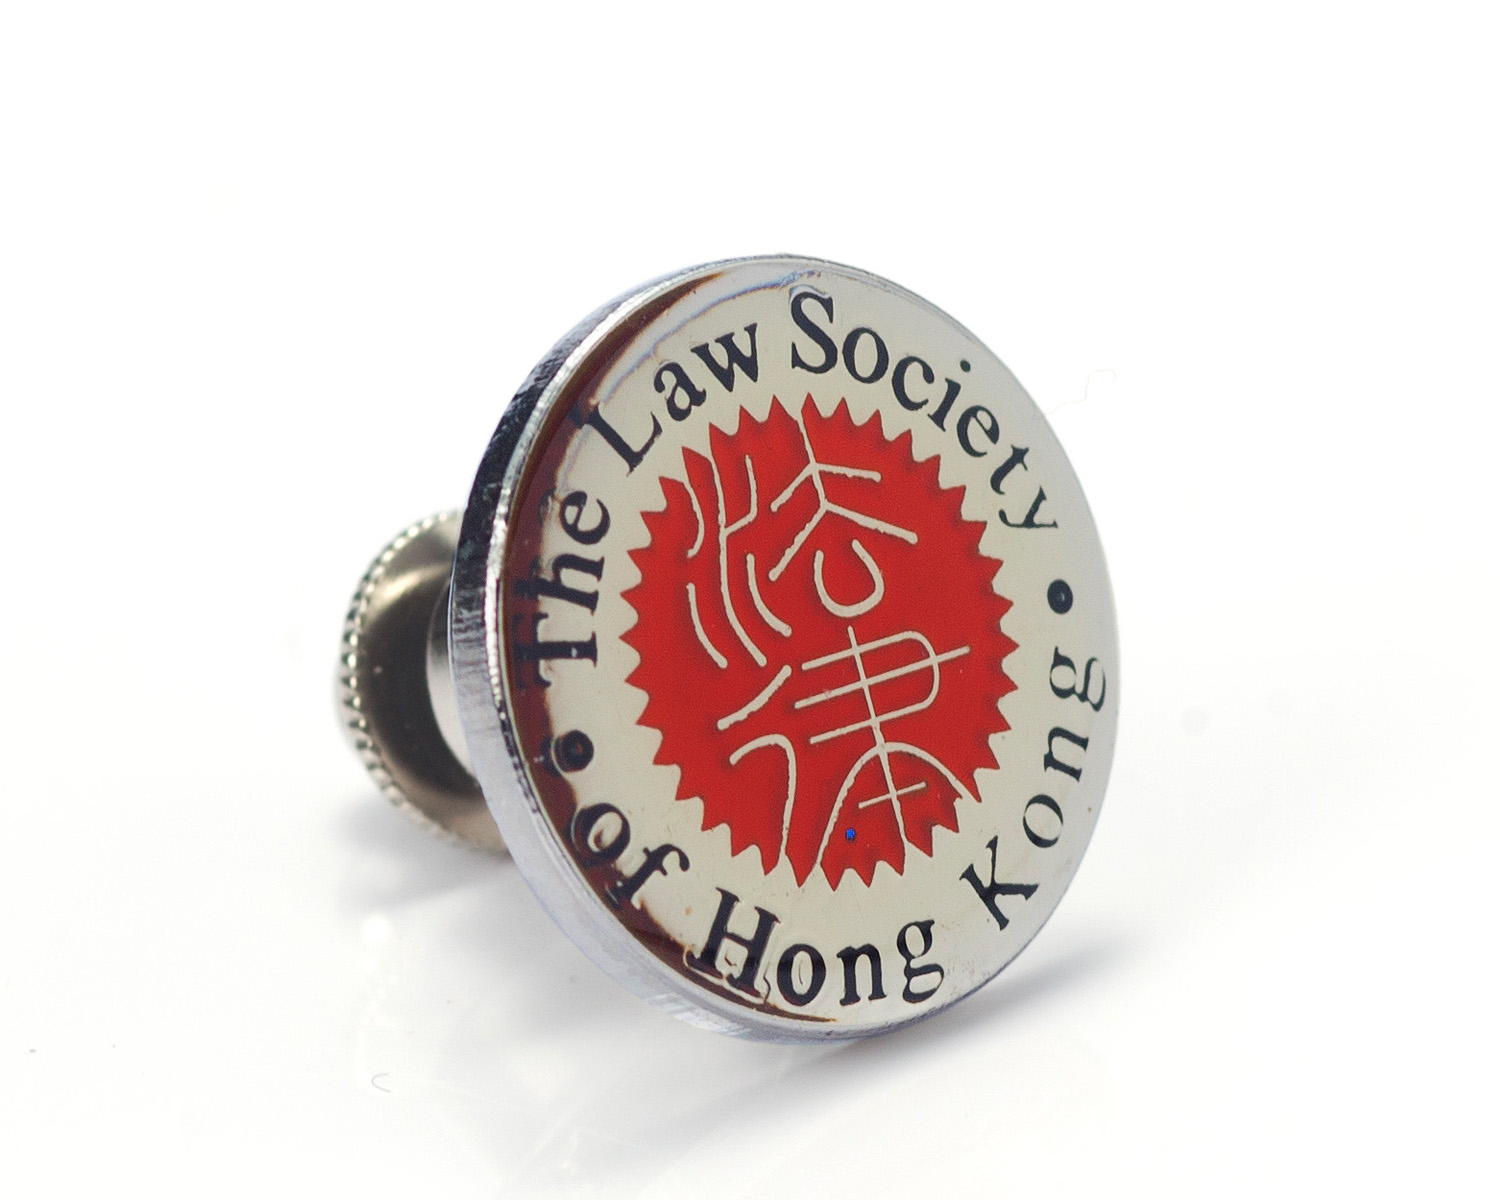 Law Society Pin